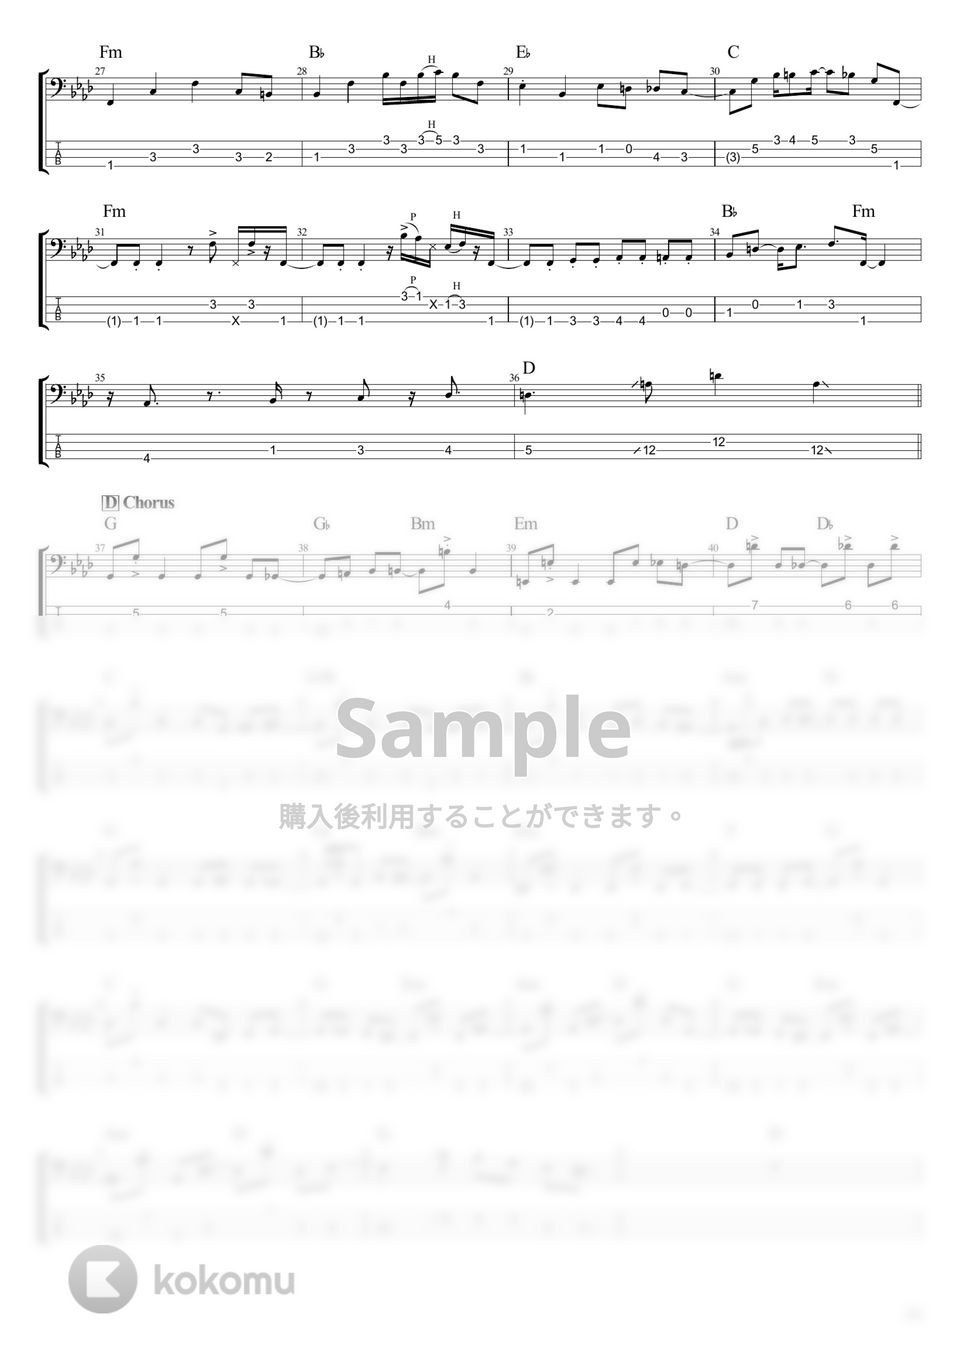 ウマ娘 - 笑っちゃお！ (ベース Tab譜 4弦) by T's bass score